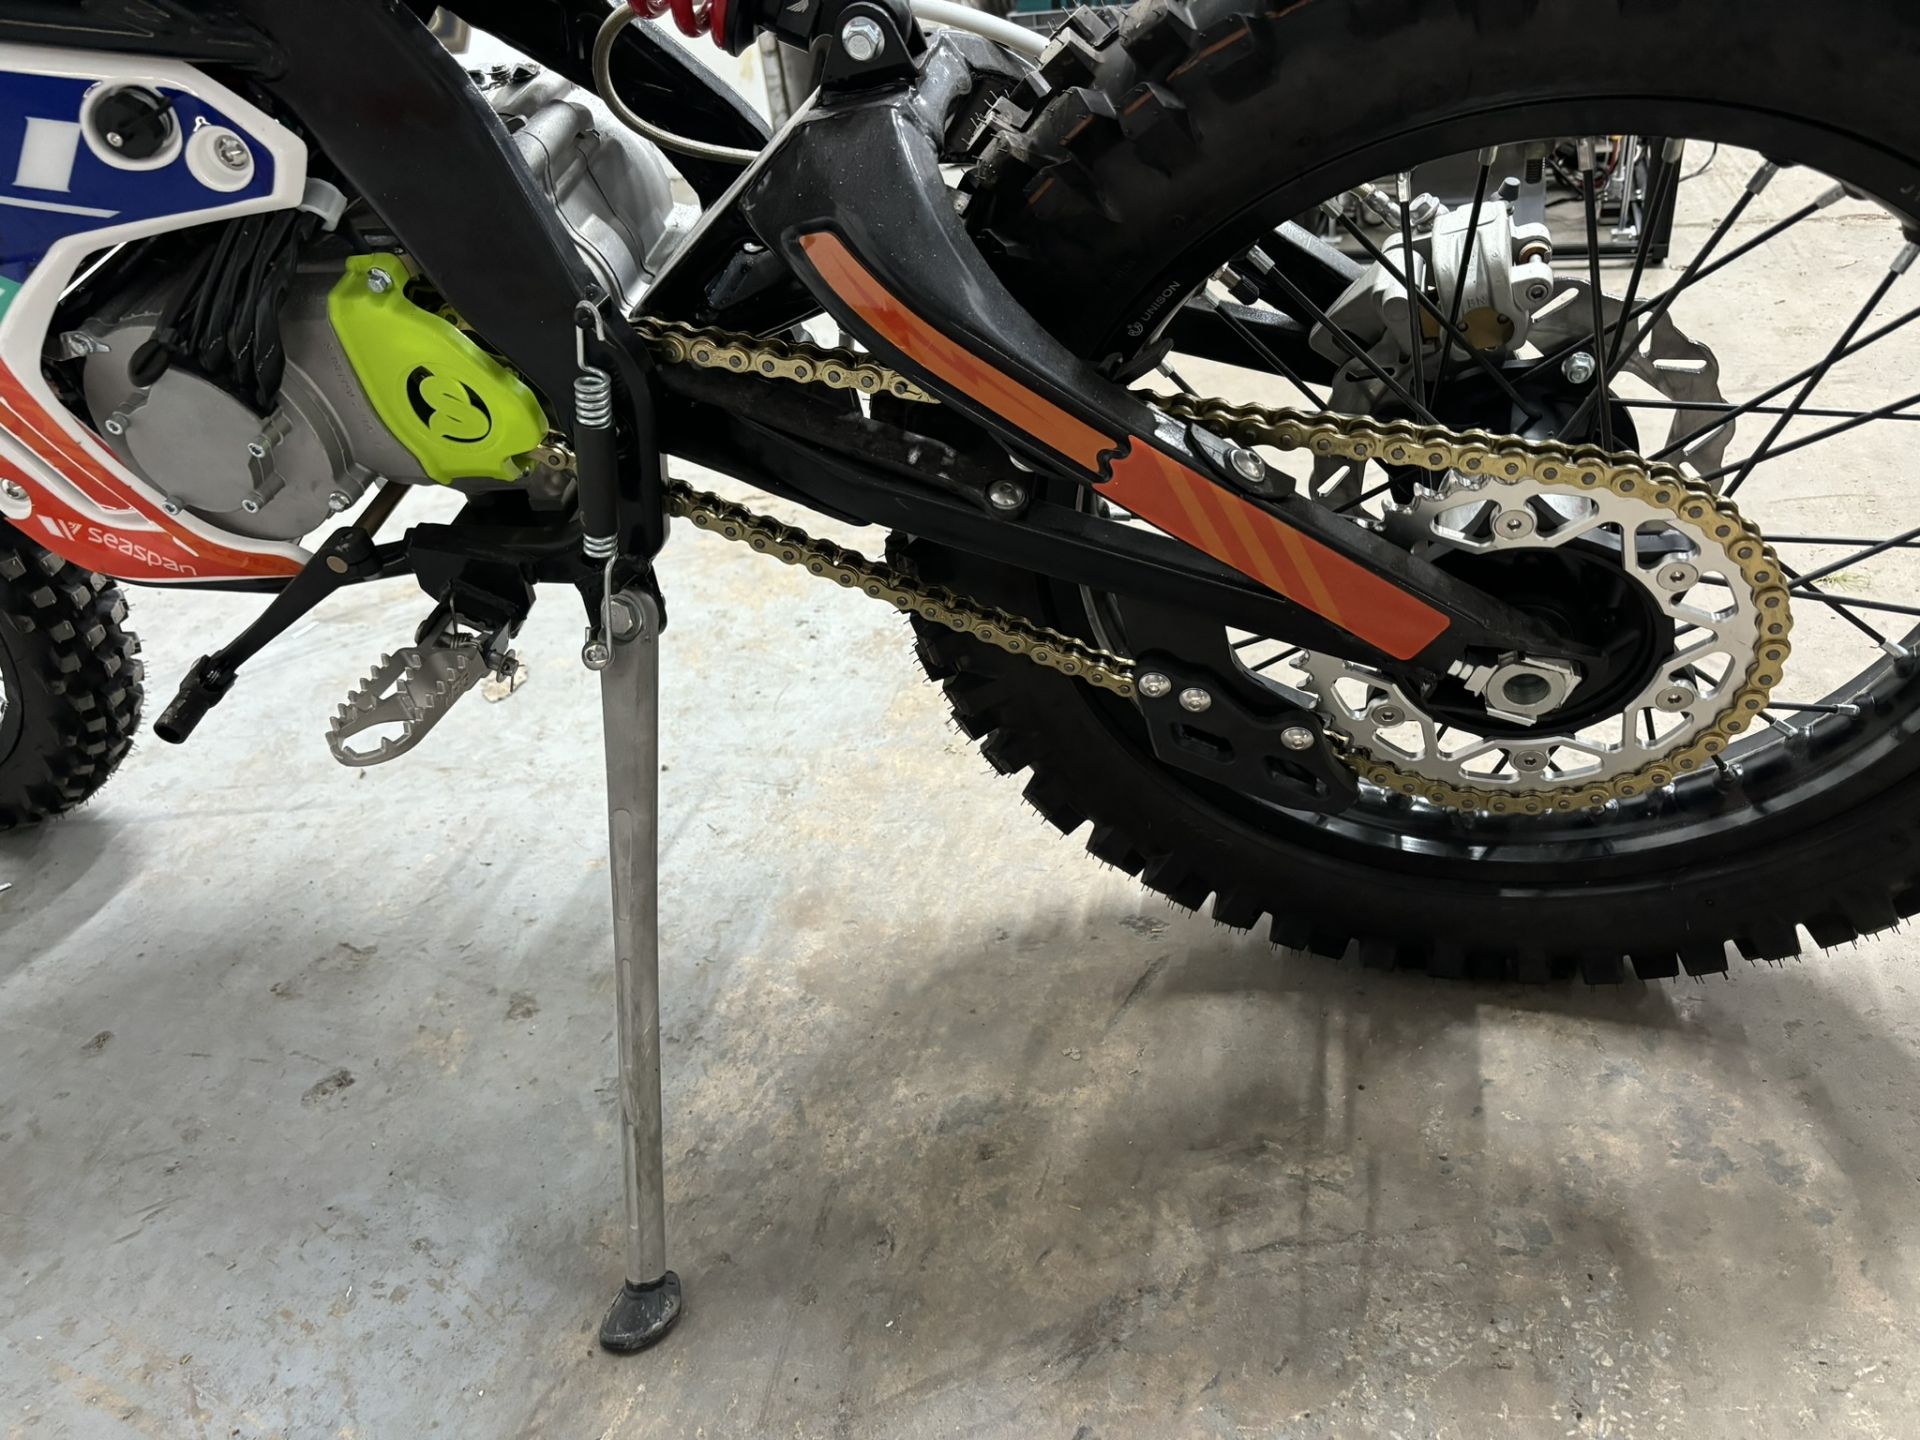 Velimotor VMX12 Electric Motorcycle / Dirt Bike - Image 18 of 24